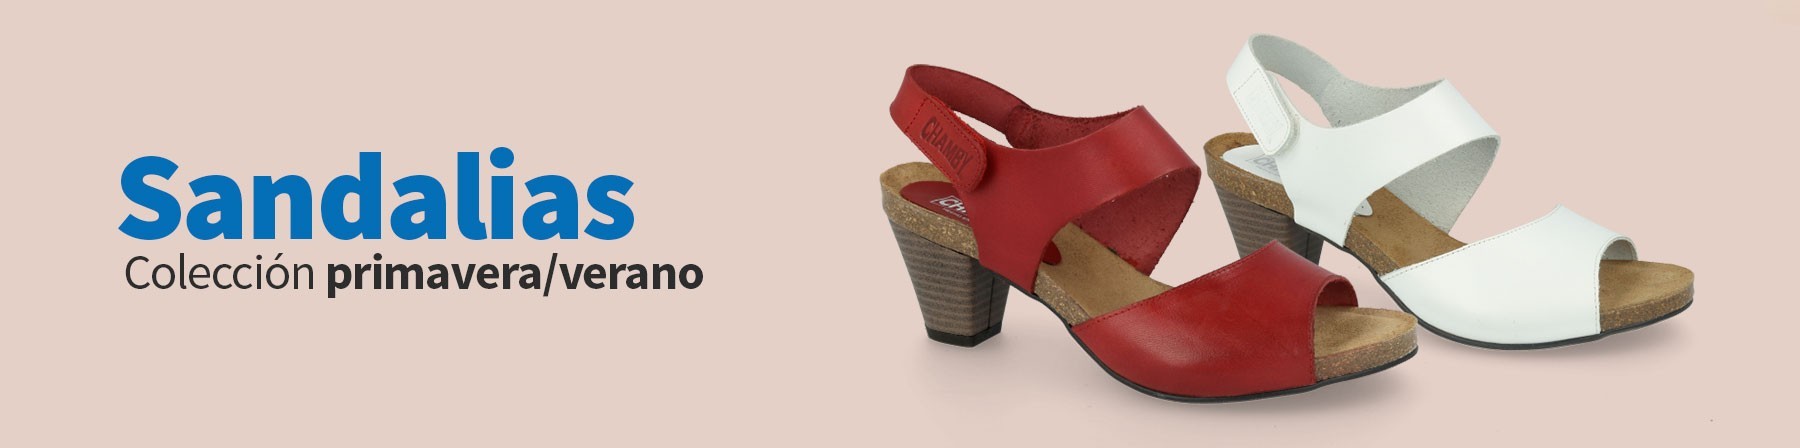 Sandalias comodas mujer, Sandalias piel mujer |ZapatoDirecto